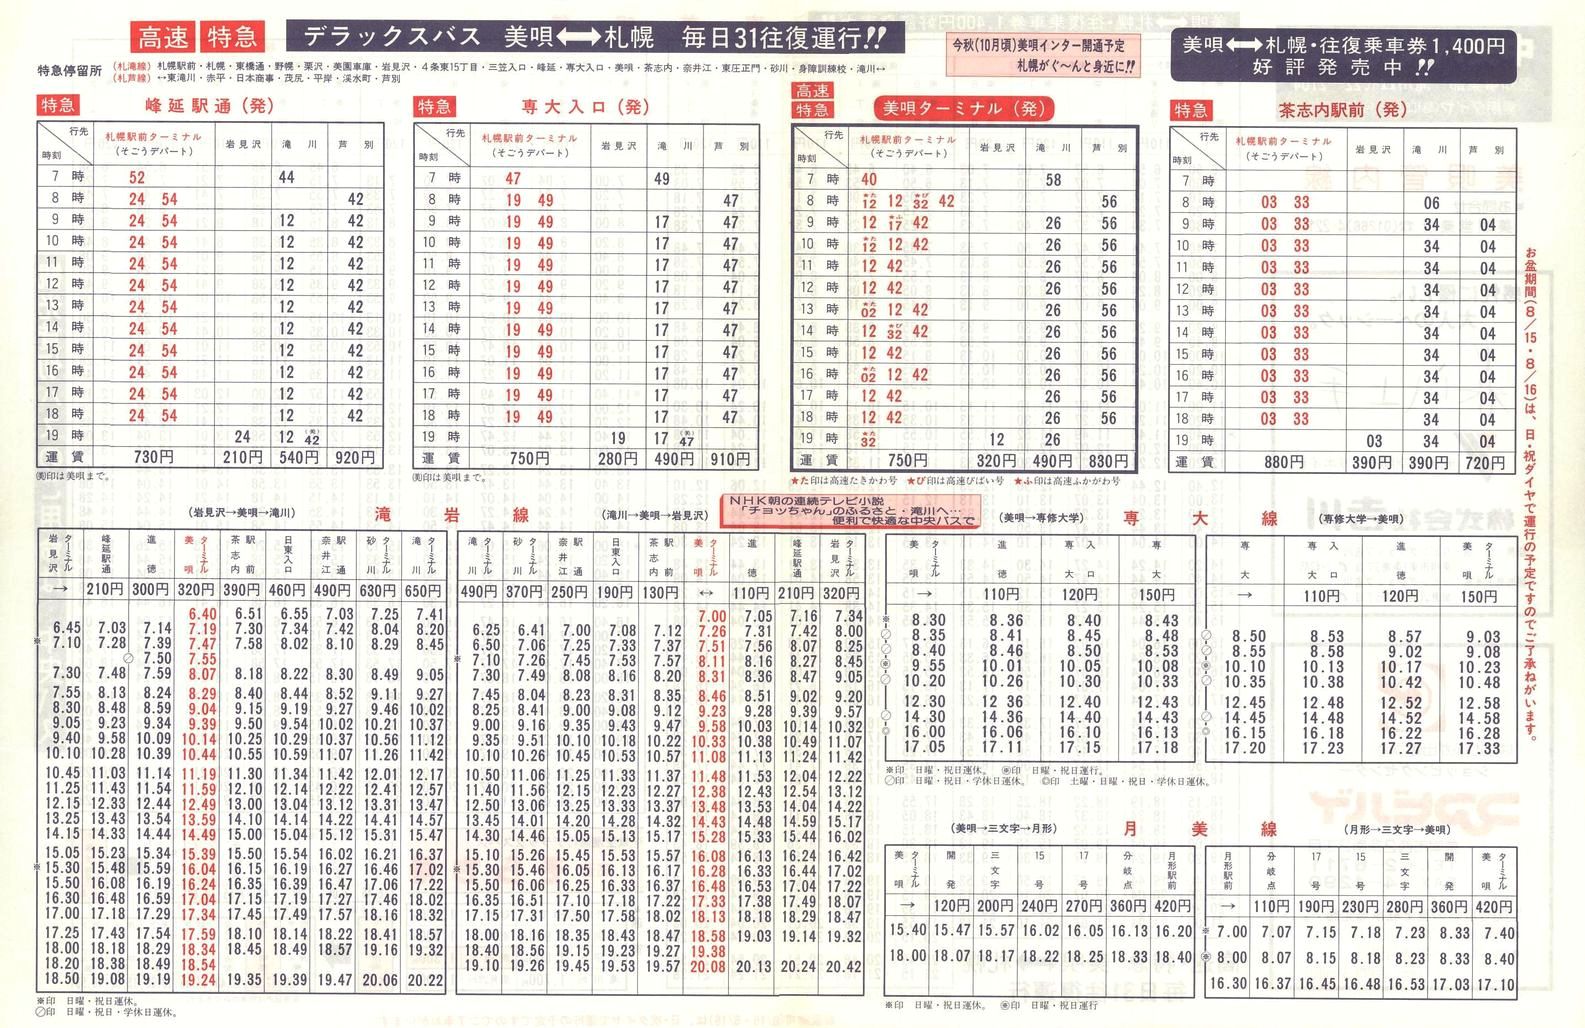 1987-04-10改正_北海道中央バス(空知)_美唄管内線時刻表裏面